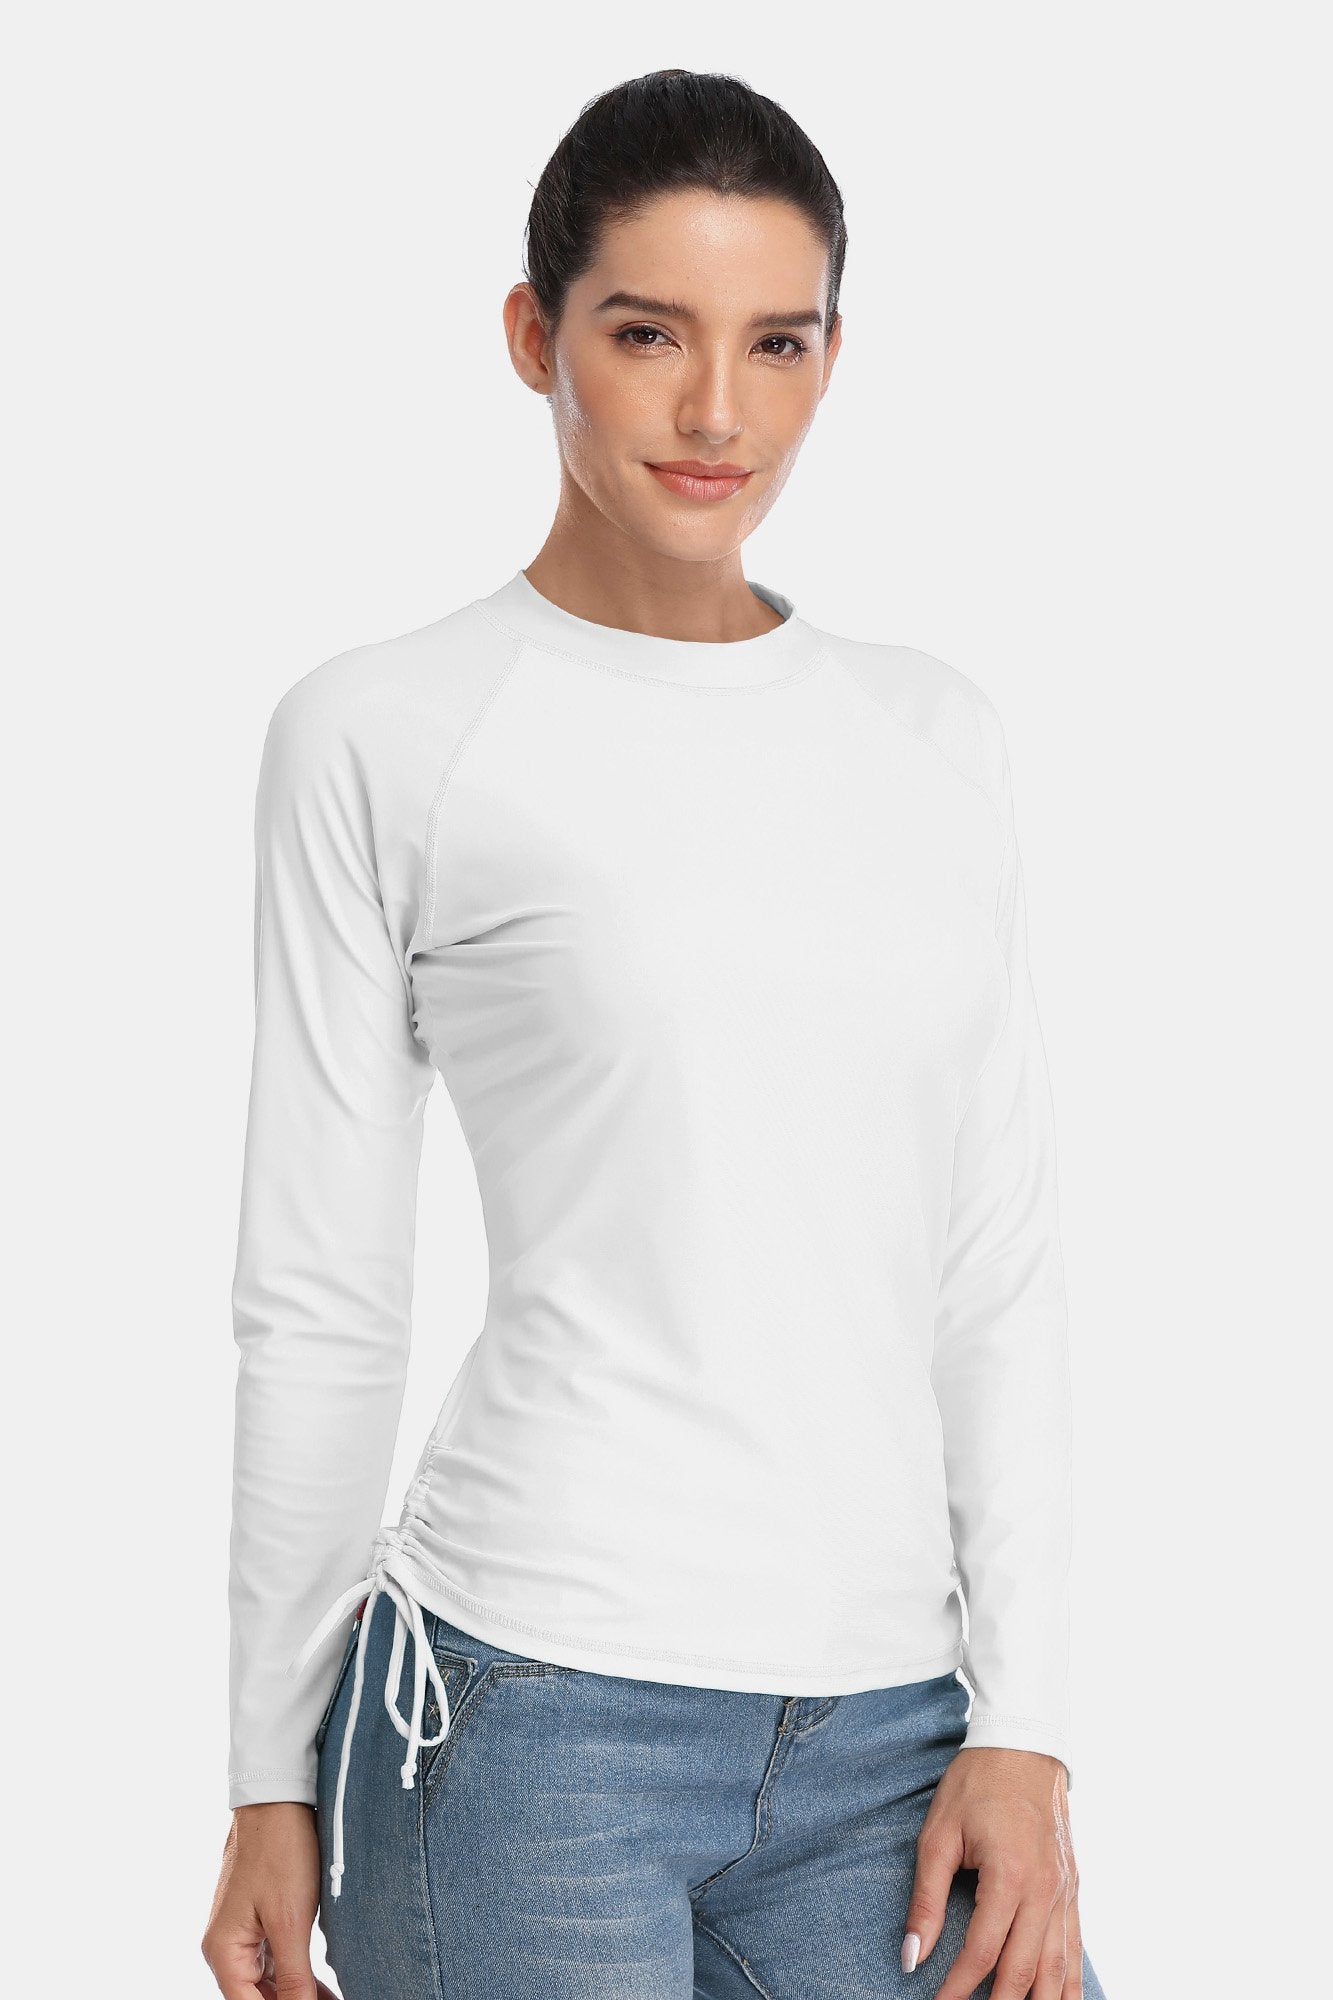 Women's White Drawstring Long Sleeve UPF 50+ Rashguard-Attraco | Fashion Outdoor Clothing